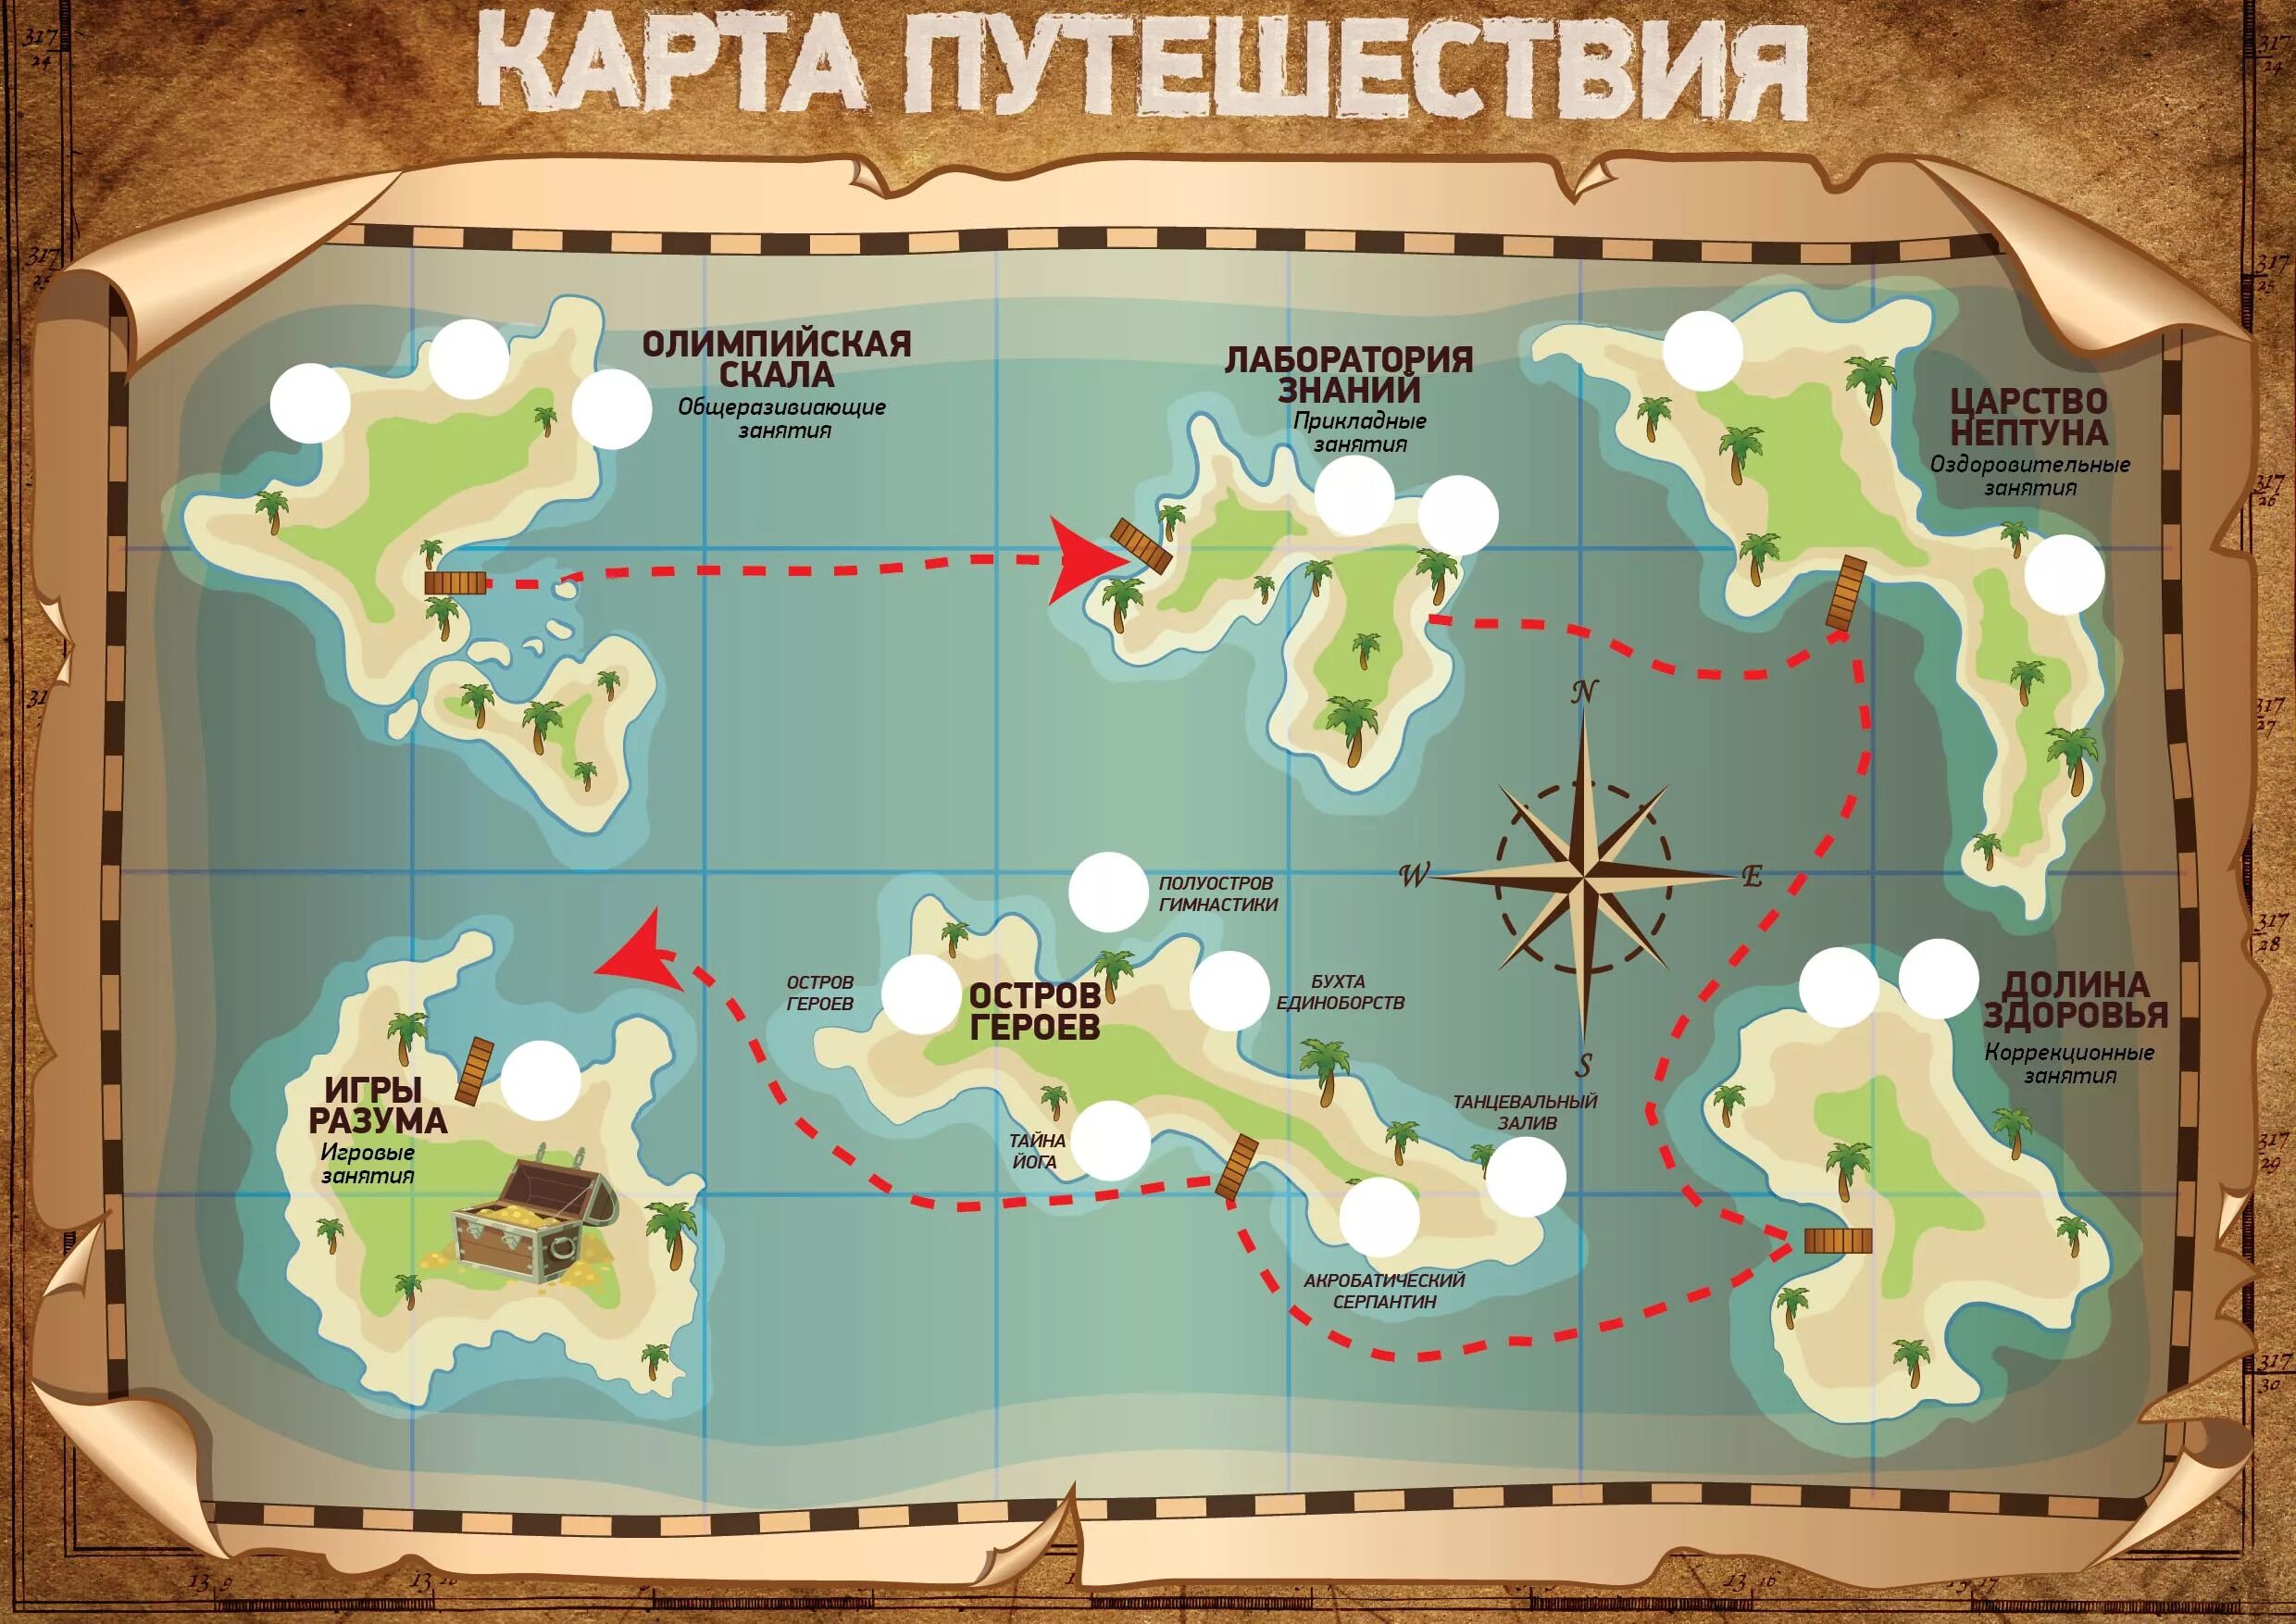 Сценарий программы путешествия. Карта для игры путешествия. Карта морского путешествия для детей. Крата путешевствия для жетйе. Карта с островами для детей.